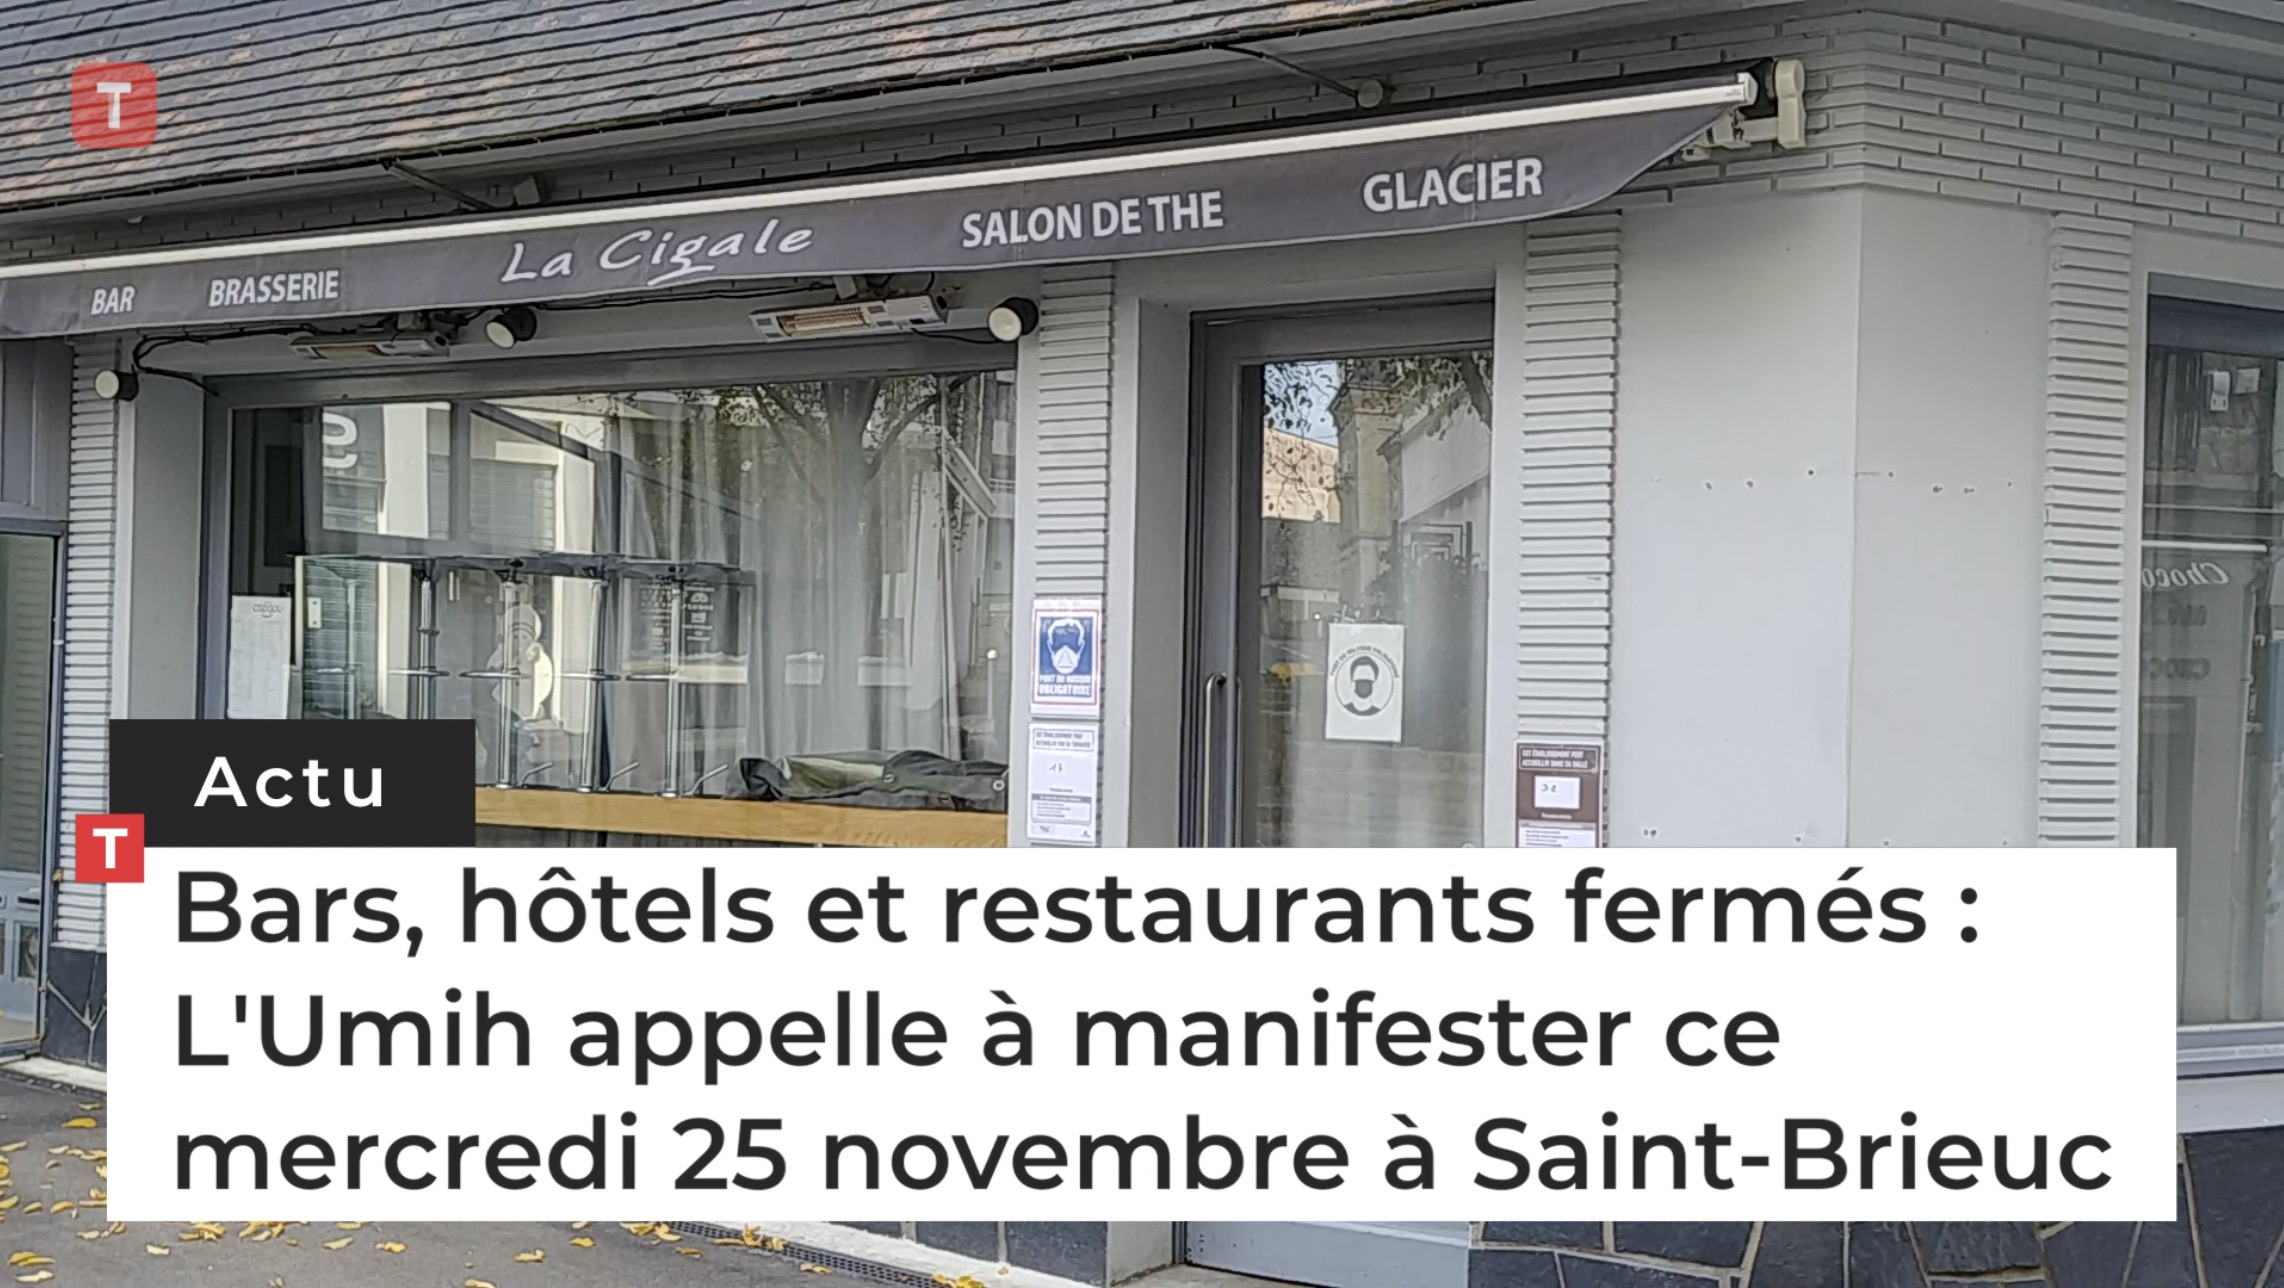 Bars, hôtels et restaurants fermés : L'Umih appelle à manifester ce mercredi 25 novembre à Saint-Brieuc (Le Télégramme)